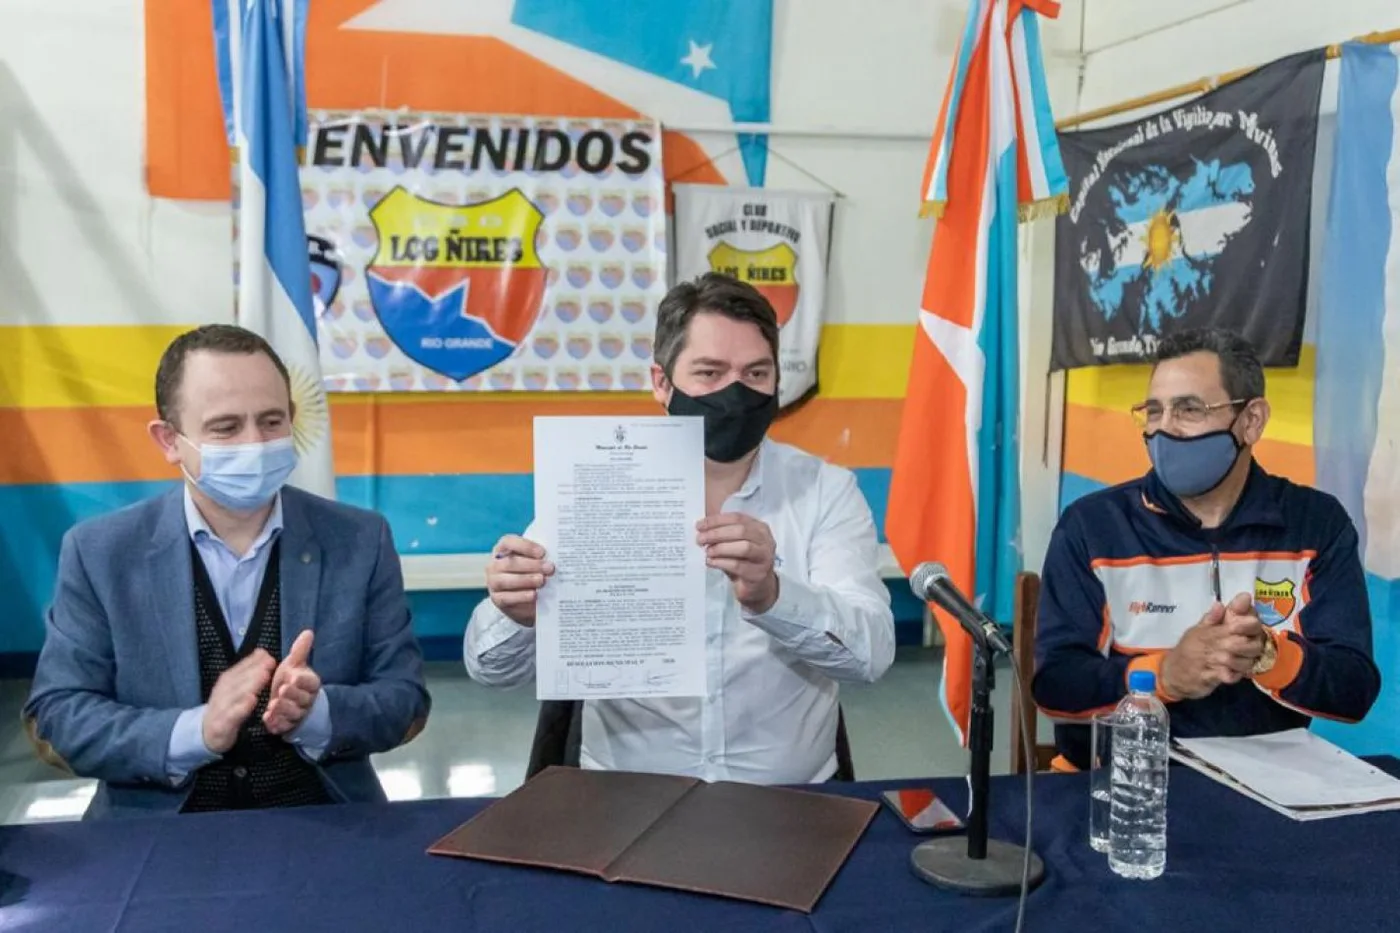 El intendente Martín Perez encabezó la firma que establece la renovación del comodato del terreno al Club Social y Deportivo “Los Ñires”.